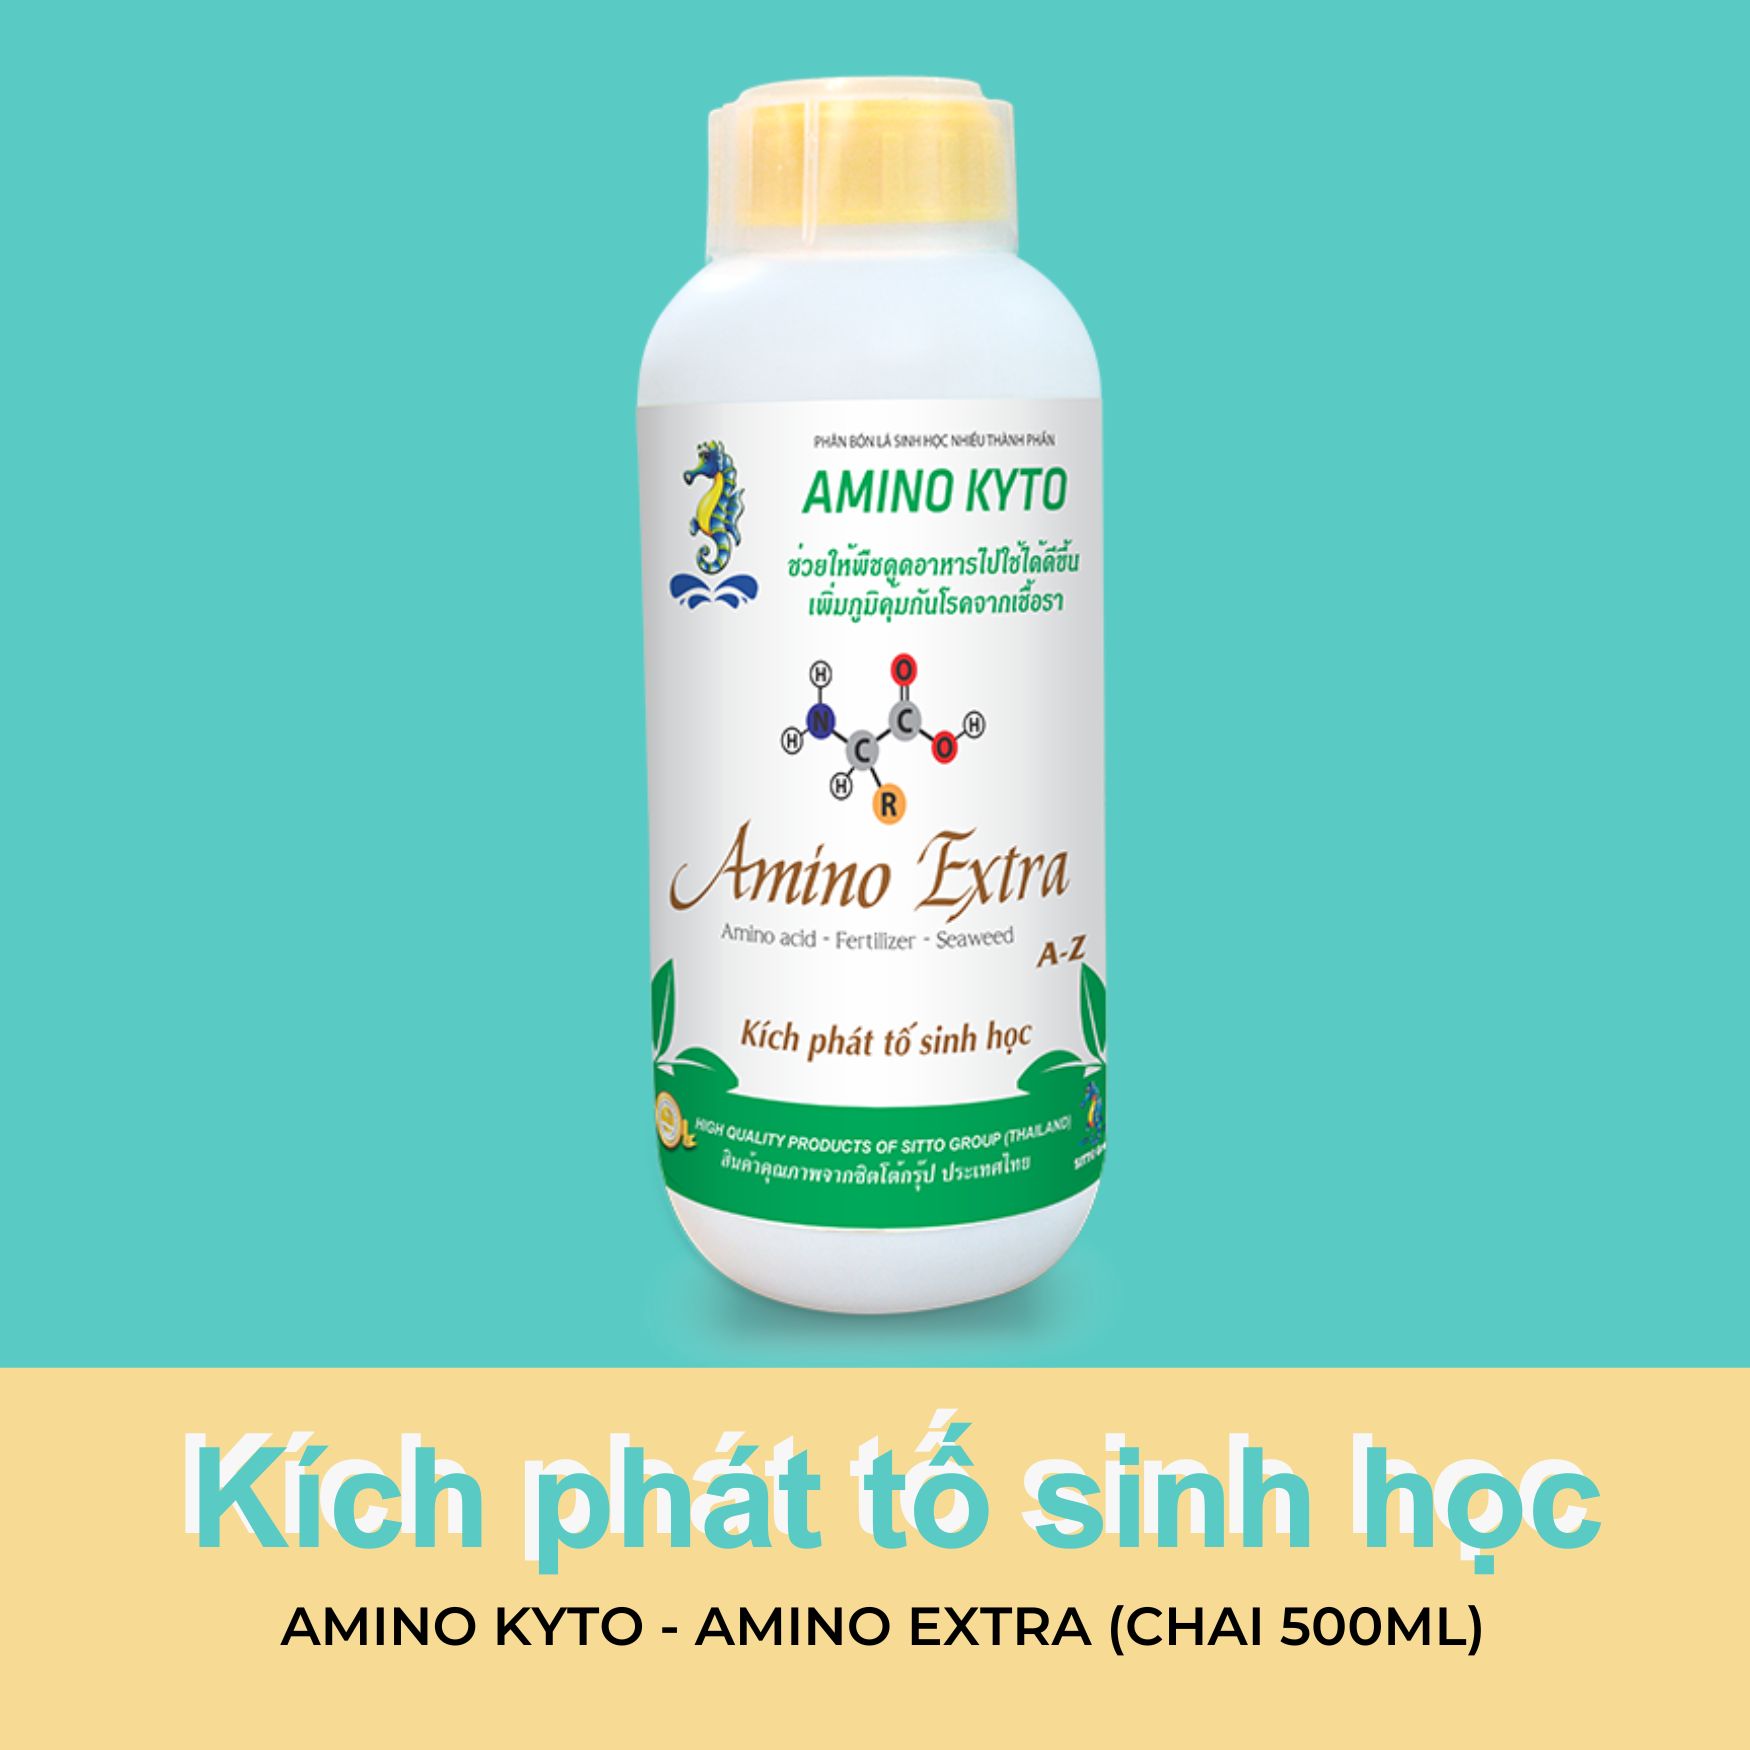 Kích phát tố sinh học - Amino Kyto - Amino Extra (Chai 500ml)